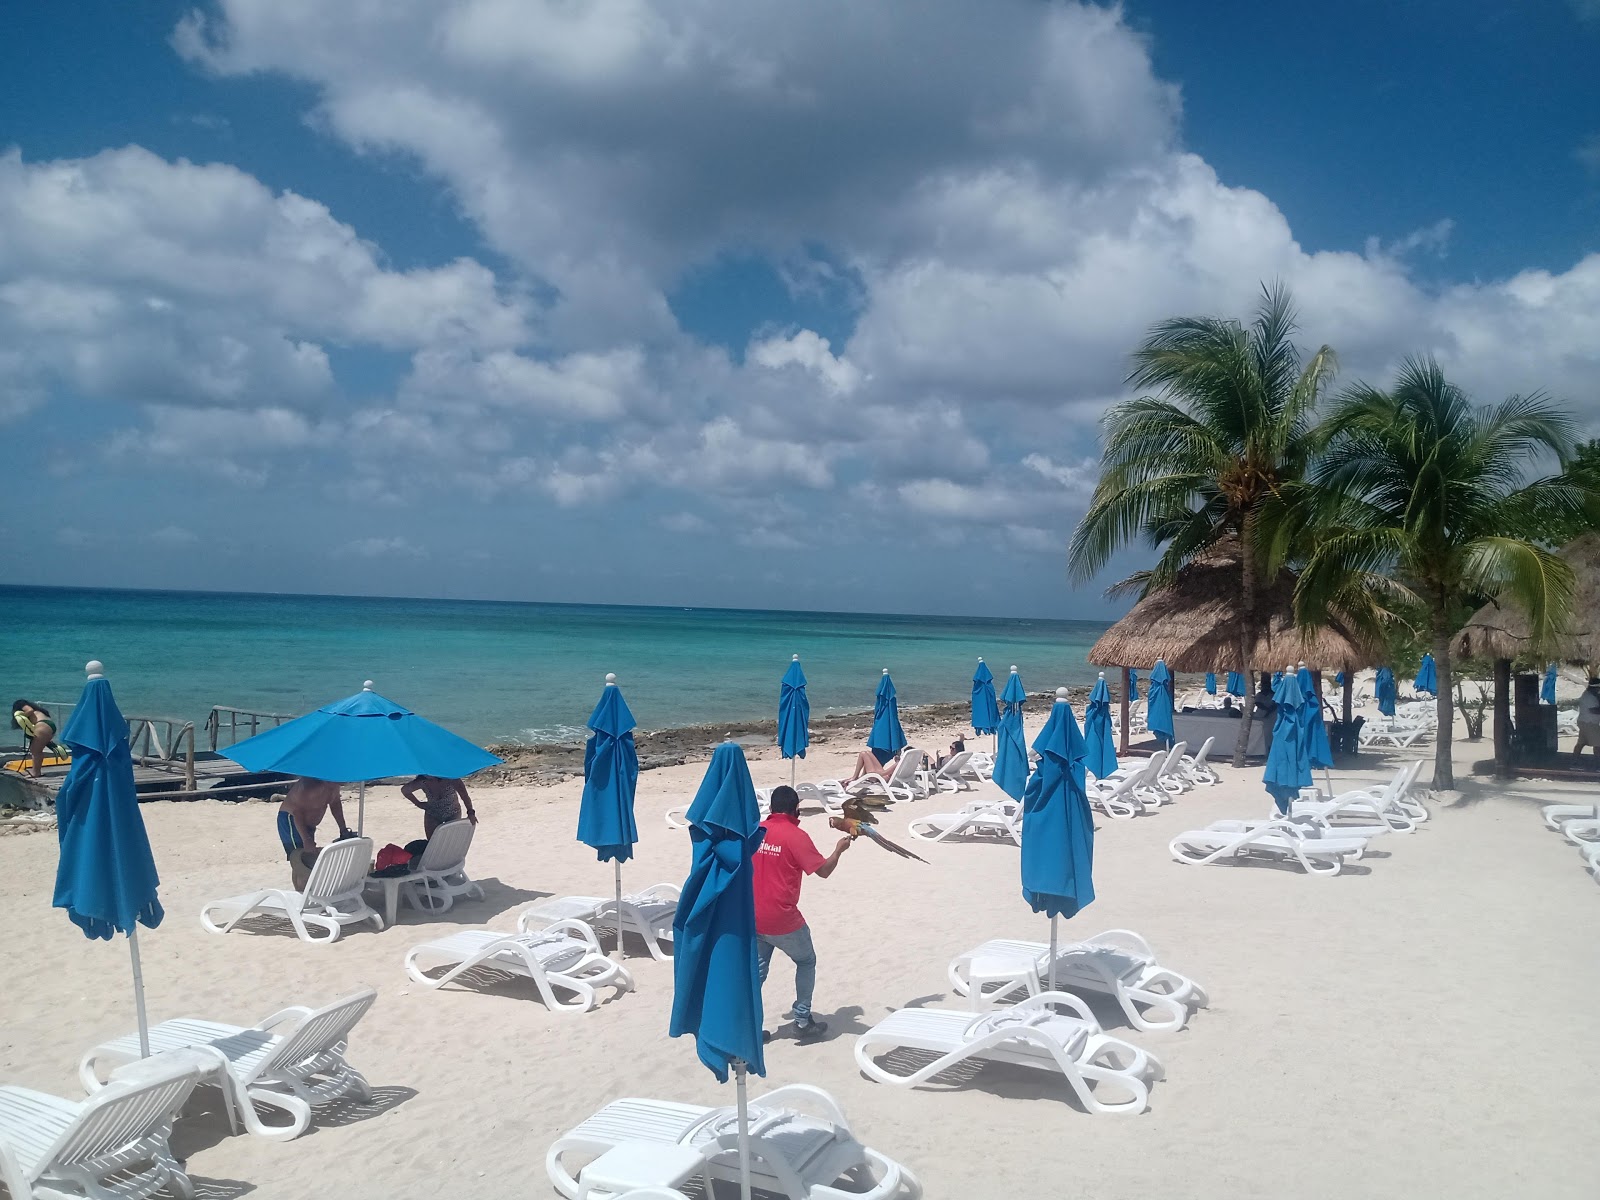 Playa Uvas'in fotoğrafı çok temiz temizlik seviyesi ile